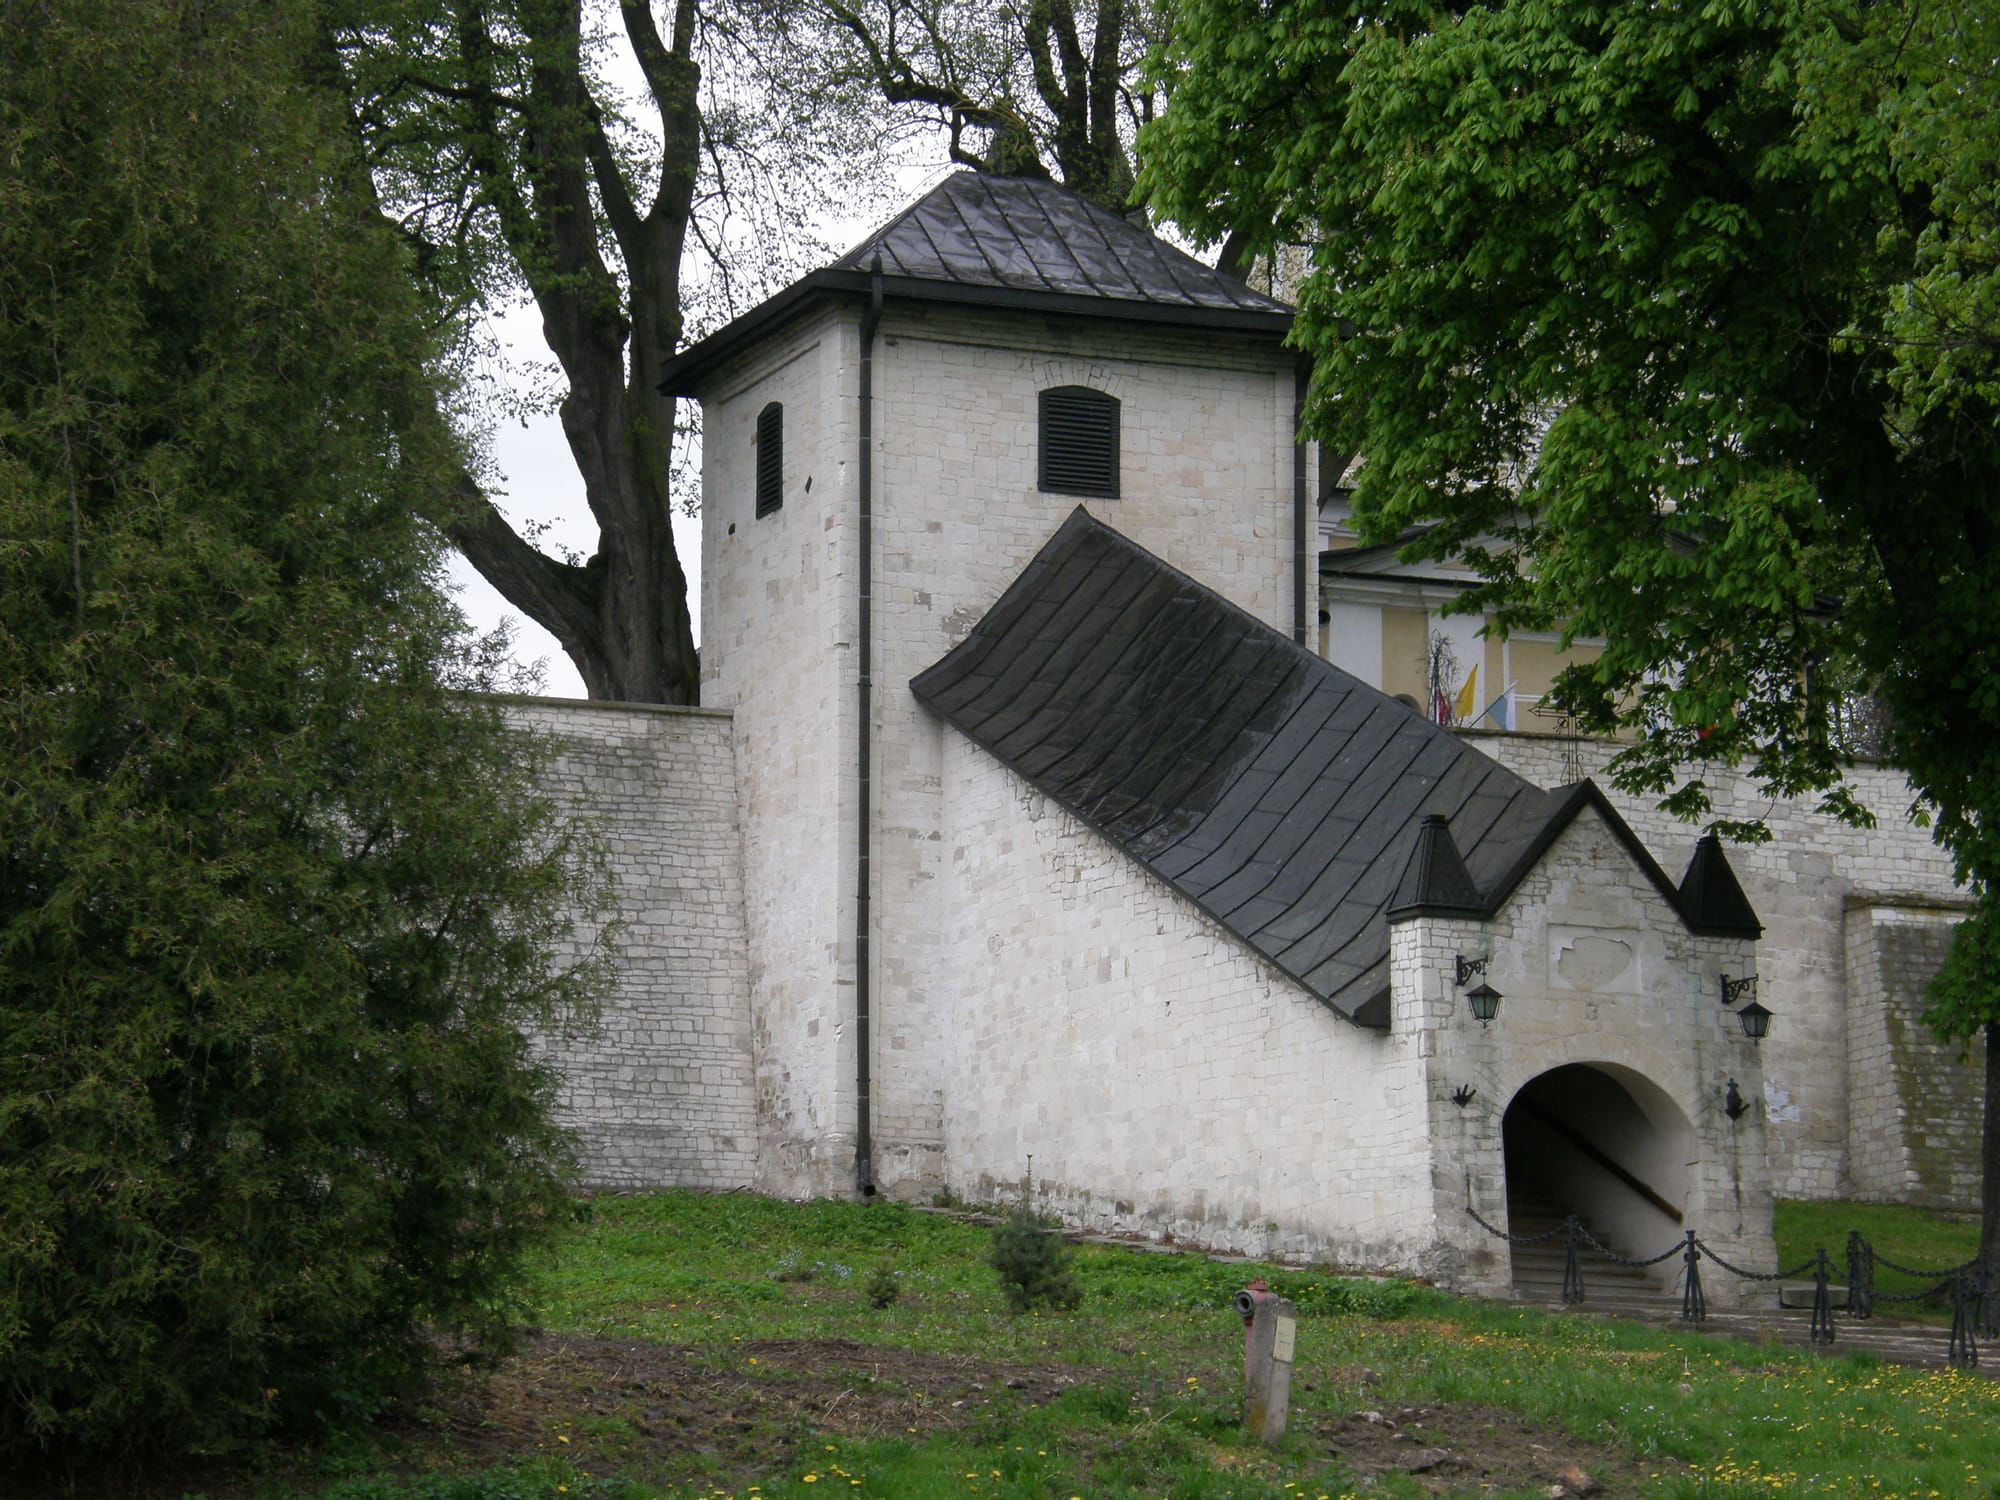 Dzwonnica-brama i kryte schody wraz z murem cmentarnym